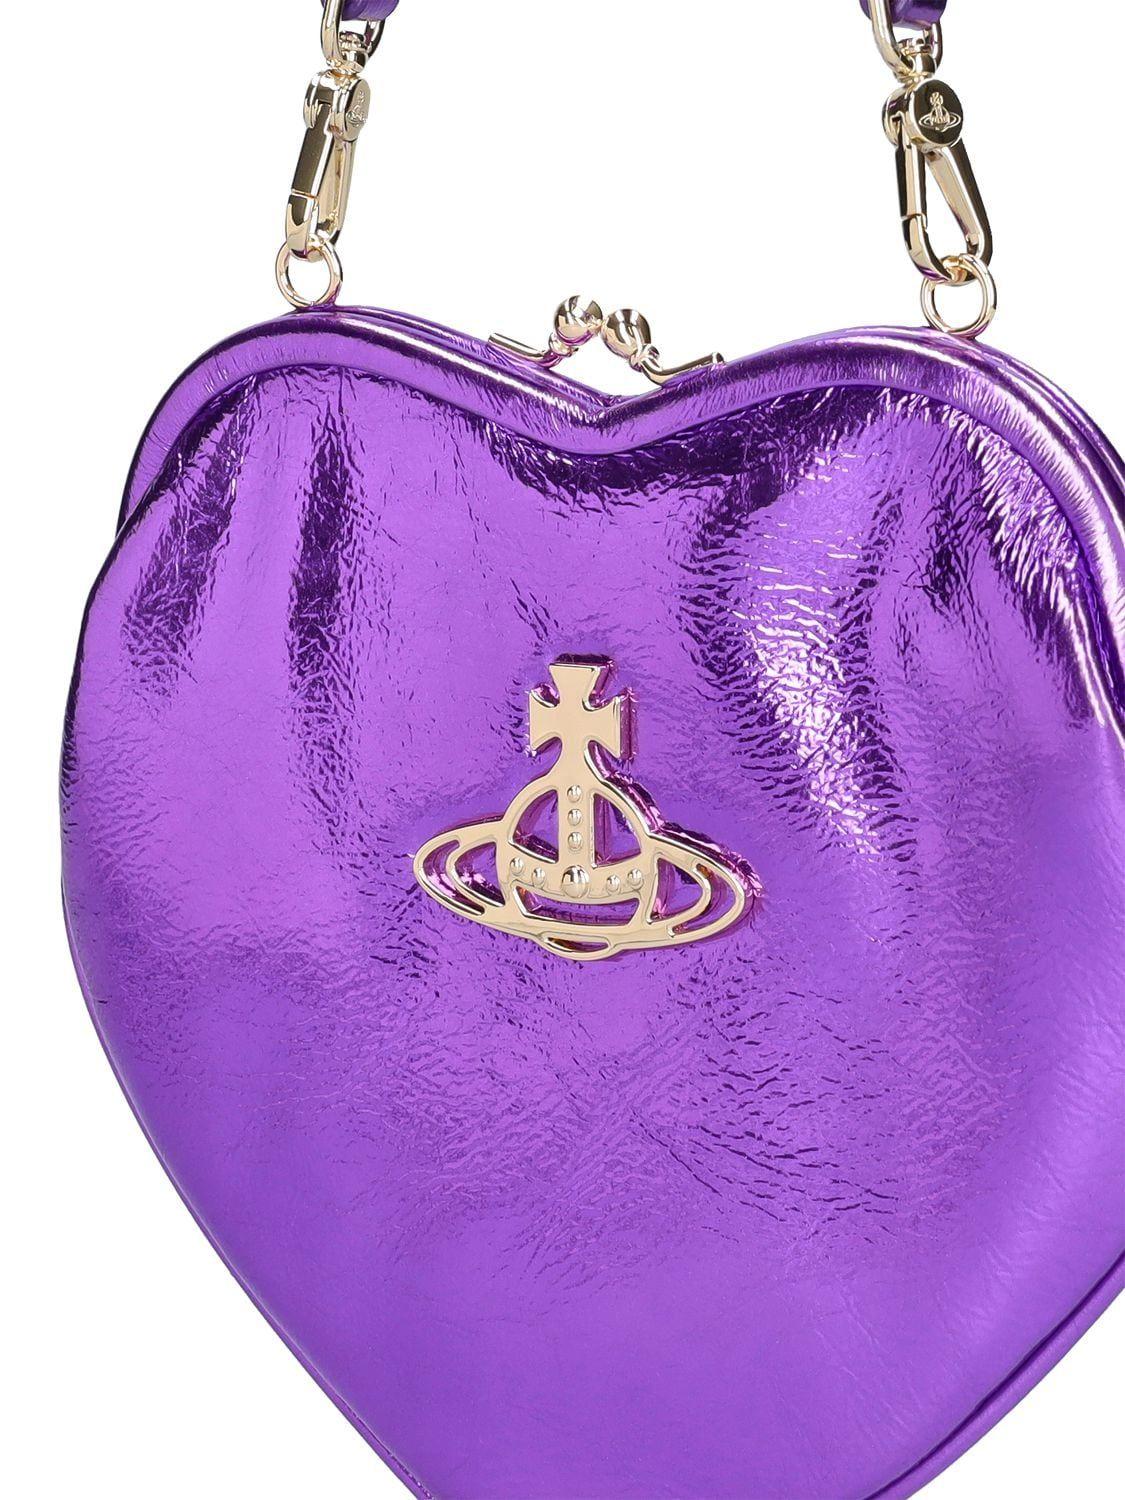 Women's 'belle Heart' Handbag by Vivienne Westwood